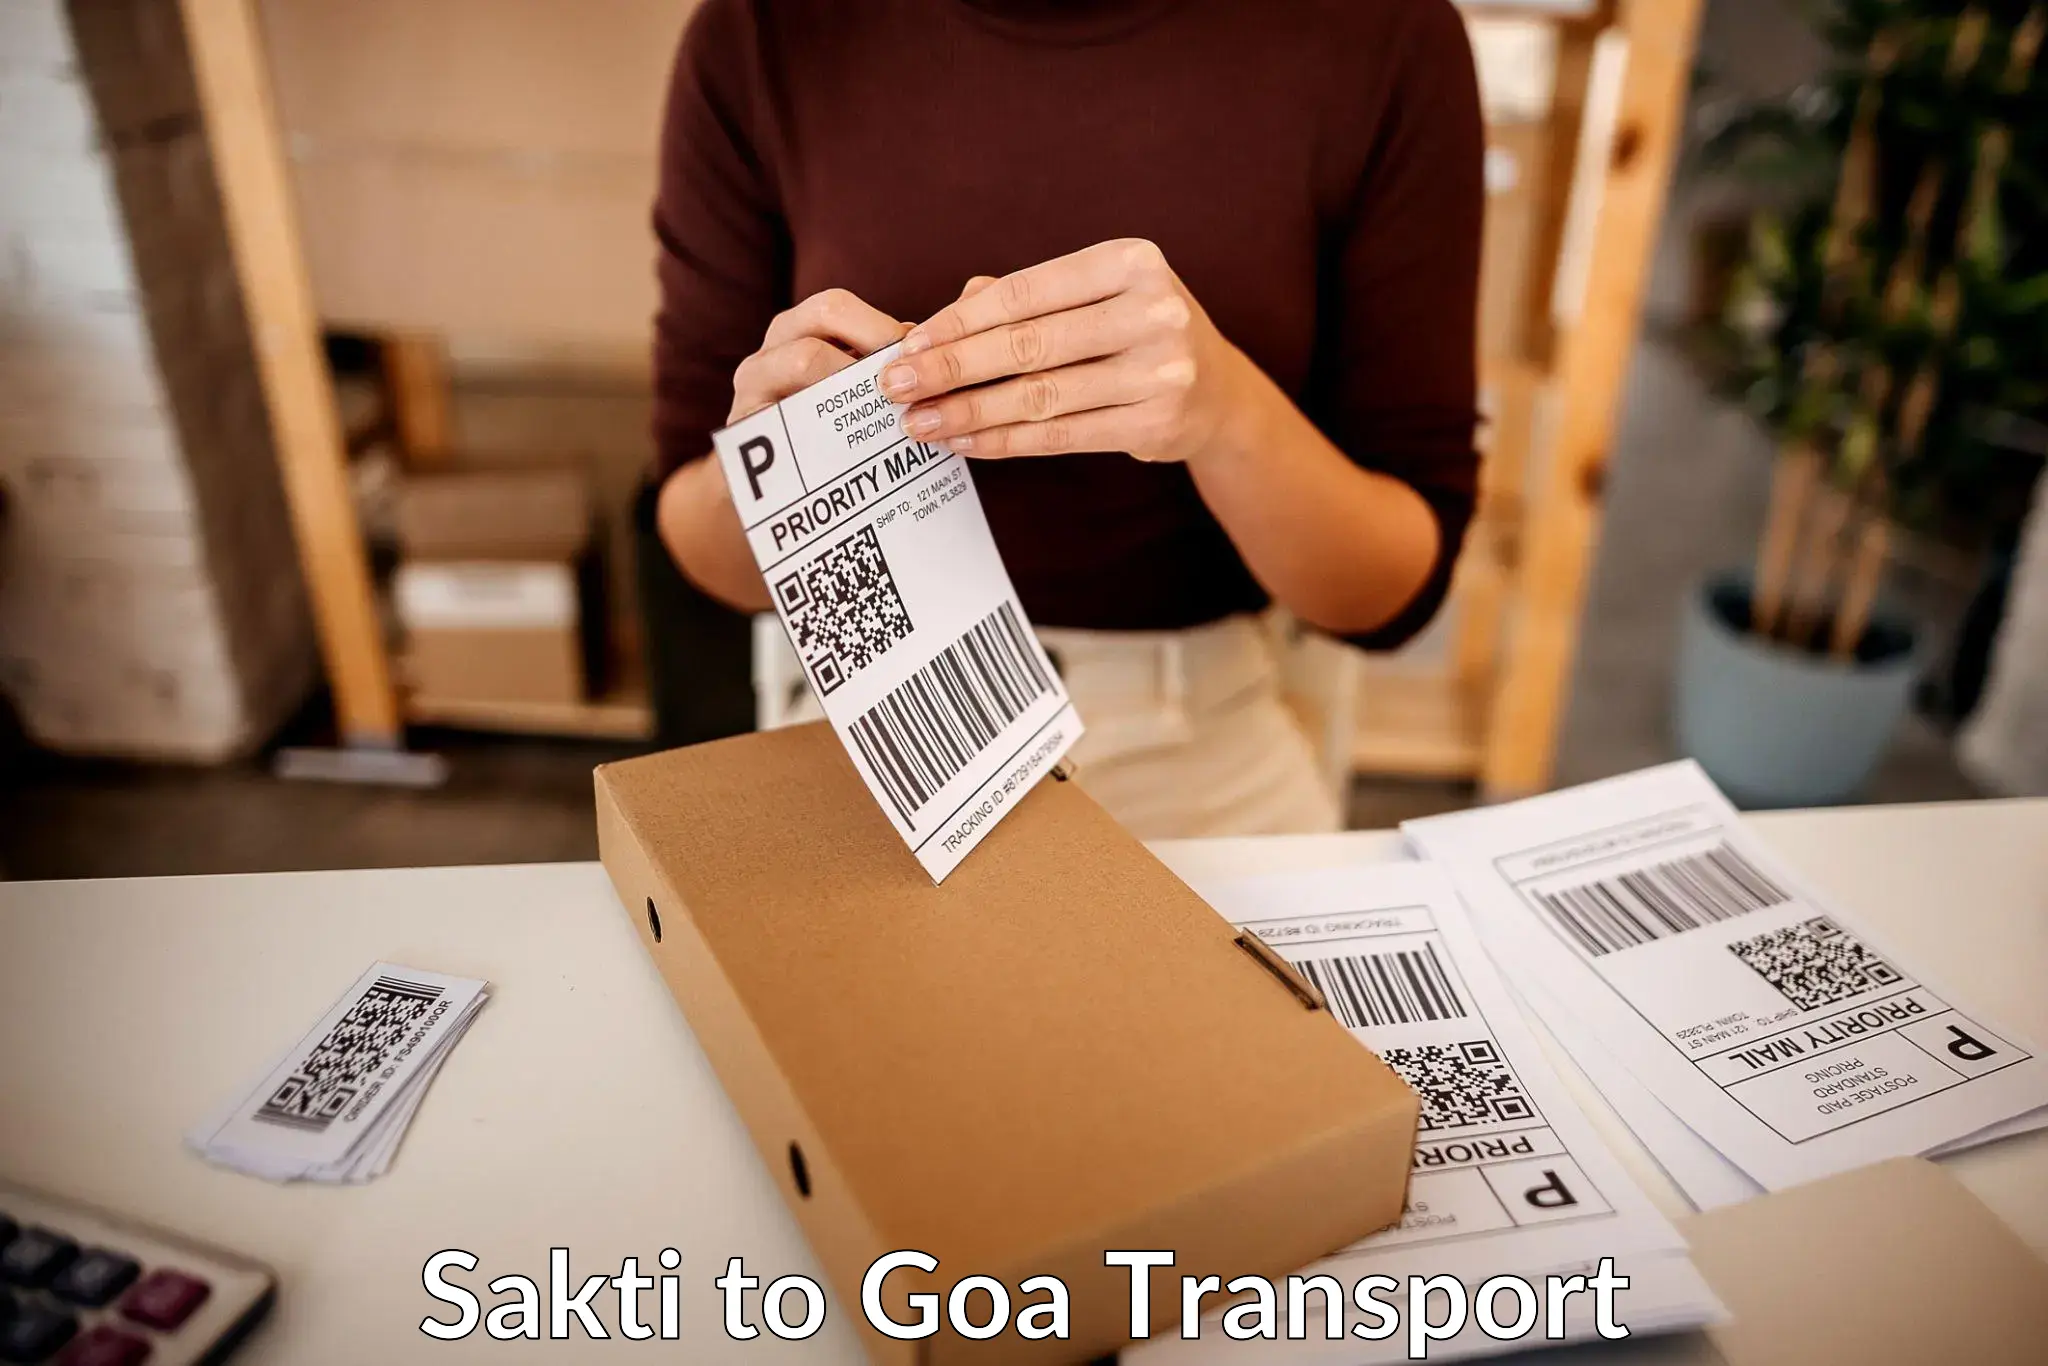 Container transportation services Sakti to Goa